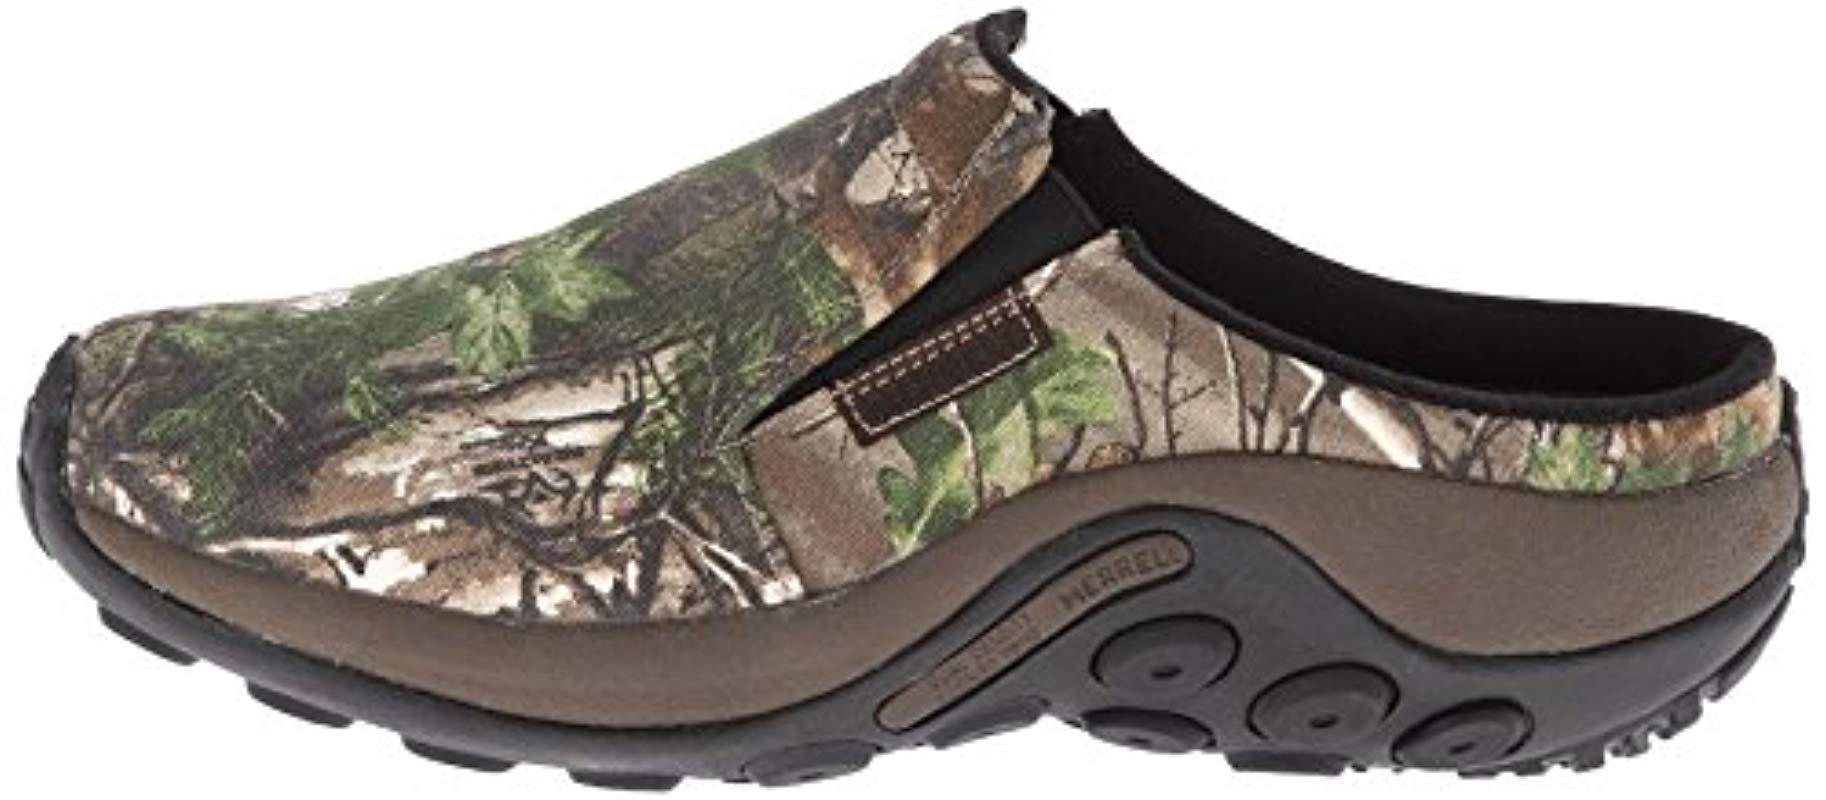 Merrell Jungle Slide Camo Slip-on Shoe for Men - Lyst